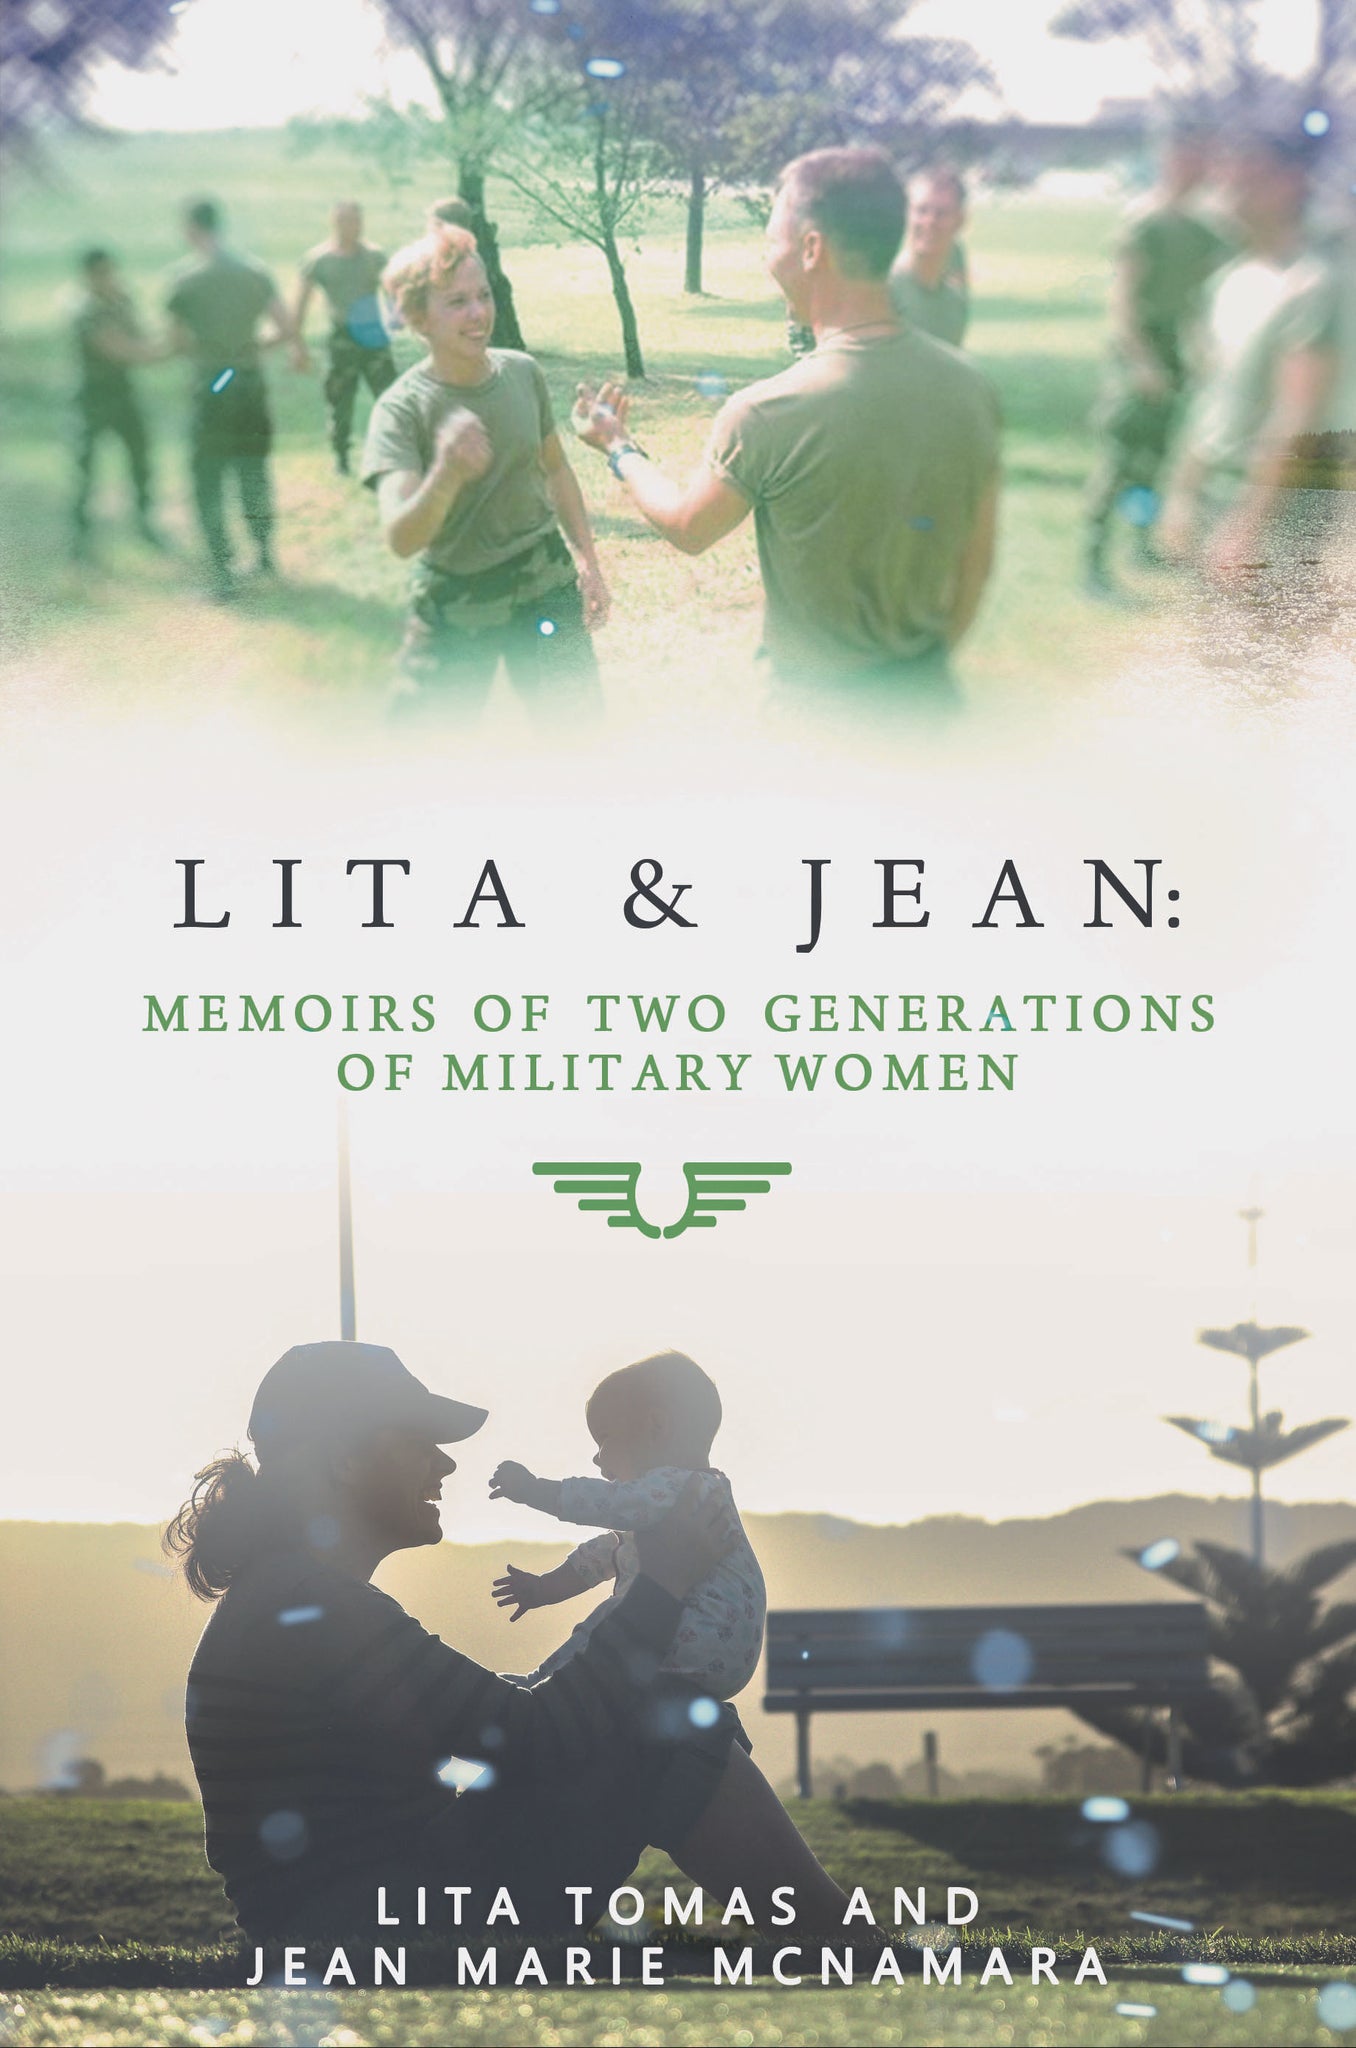 Lita & Jean: Memoirs of Two Generations of Military Women by Lita Tomas and Jean Marie McNamara